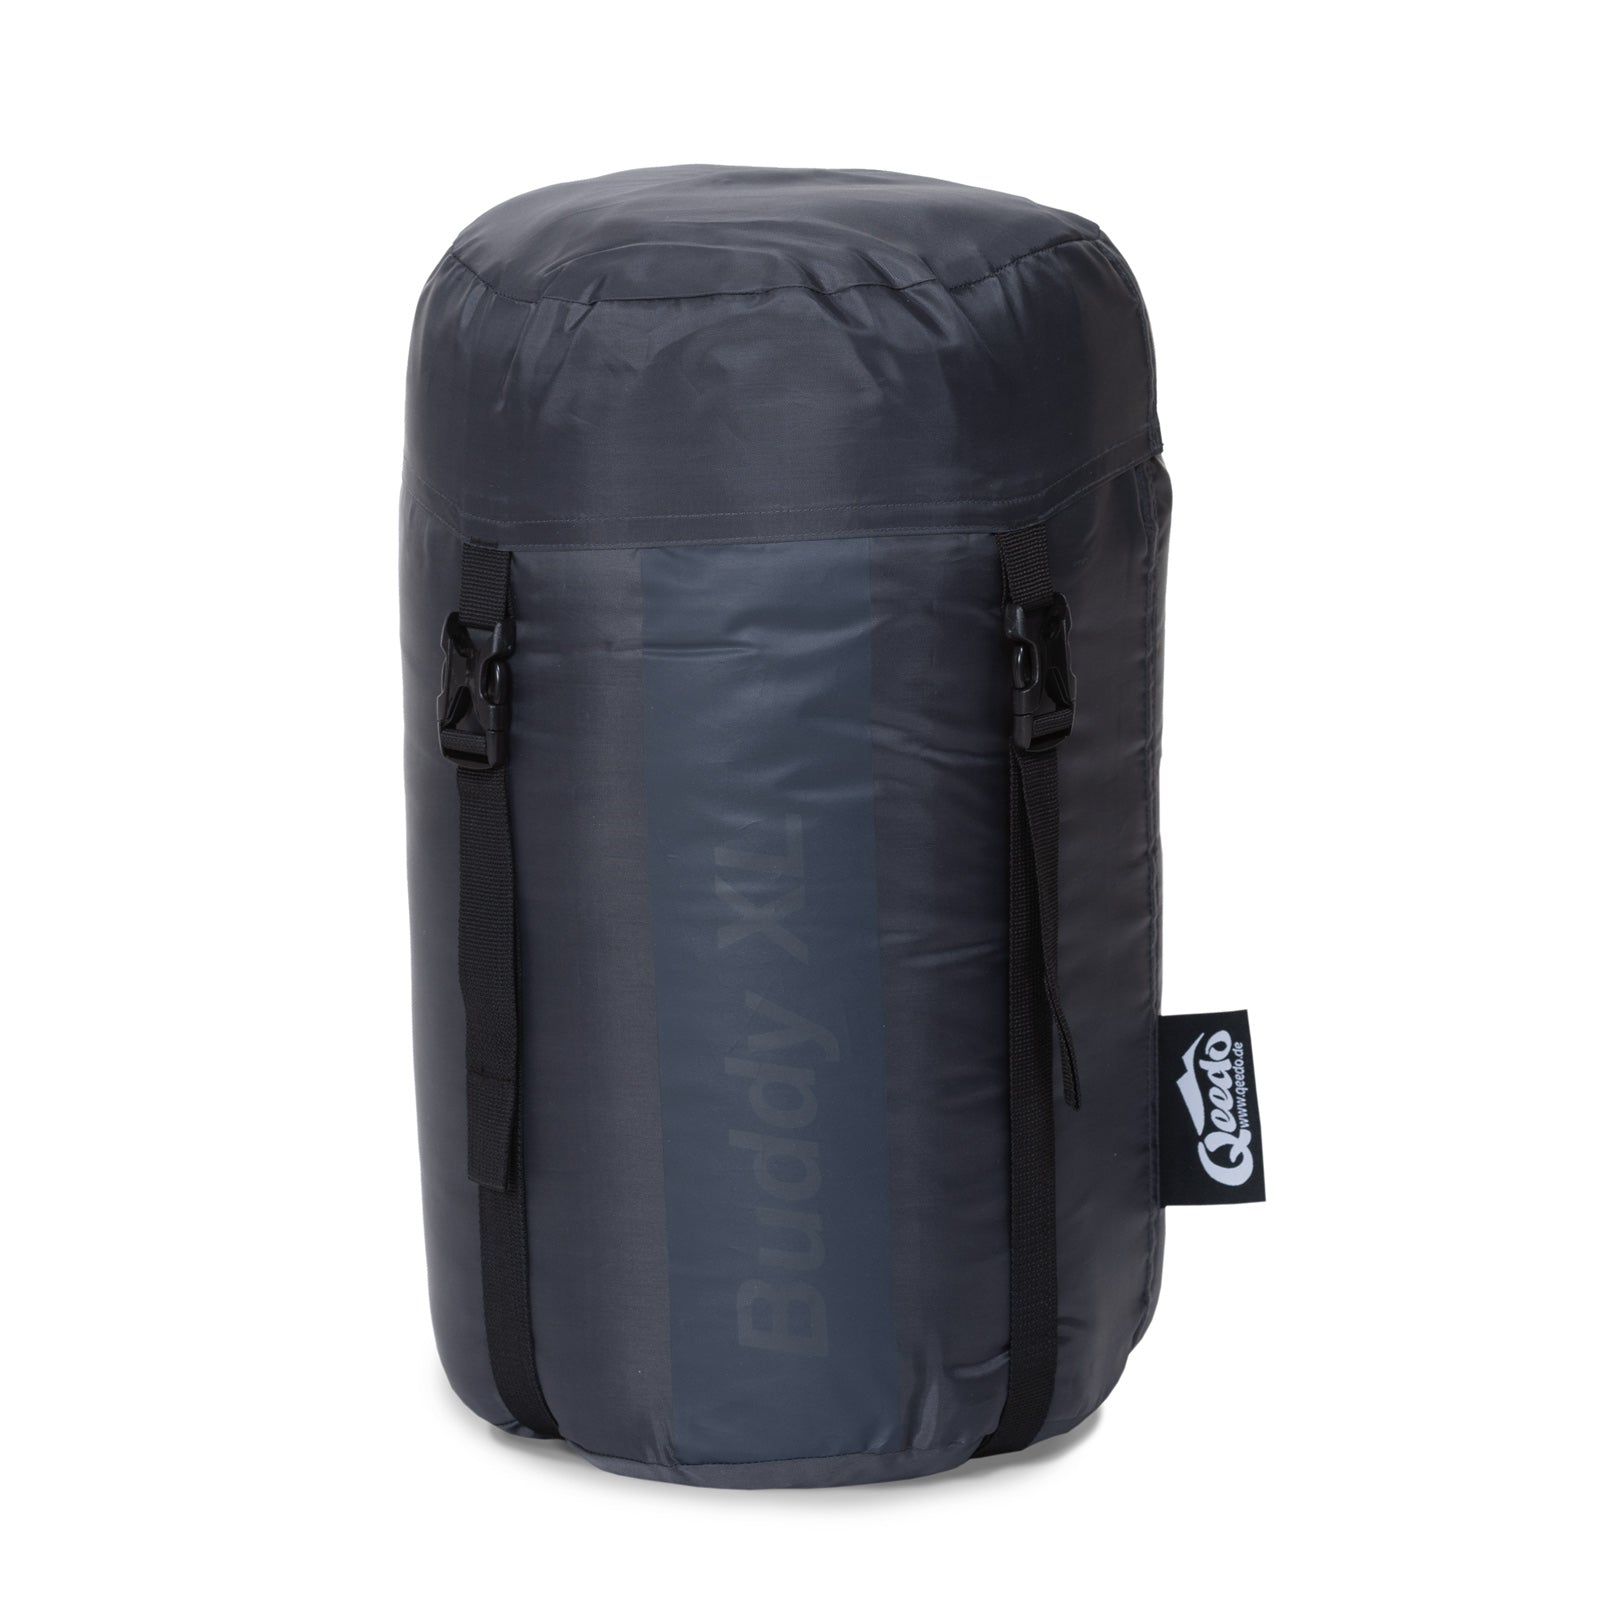 qeedo sleeping bag Buddy XL, outdoor summer sleeping bag for adults